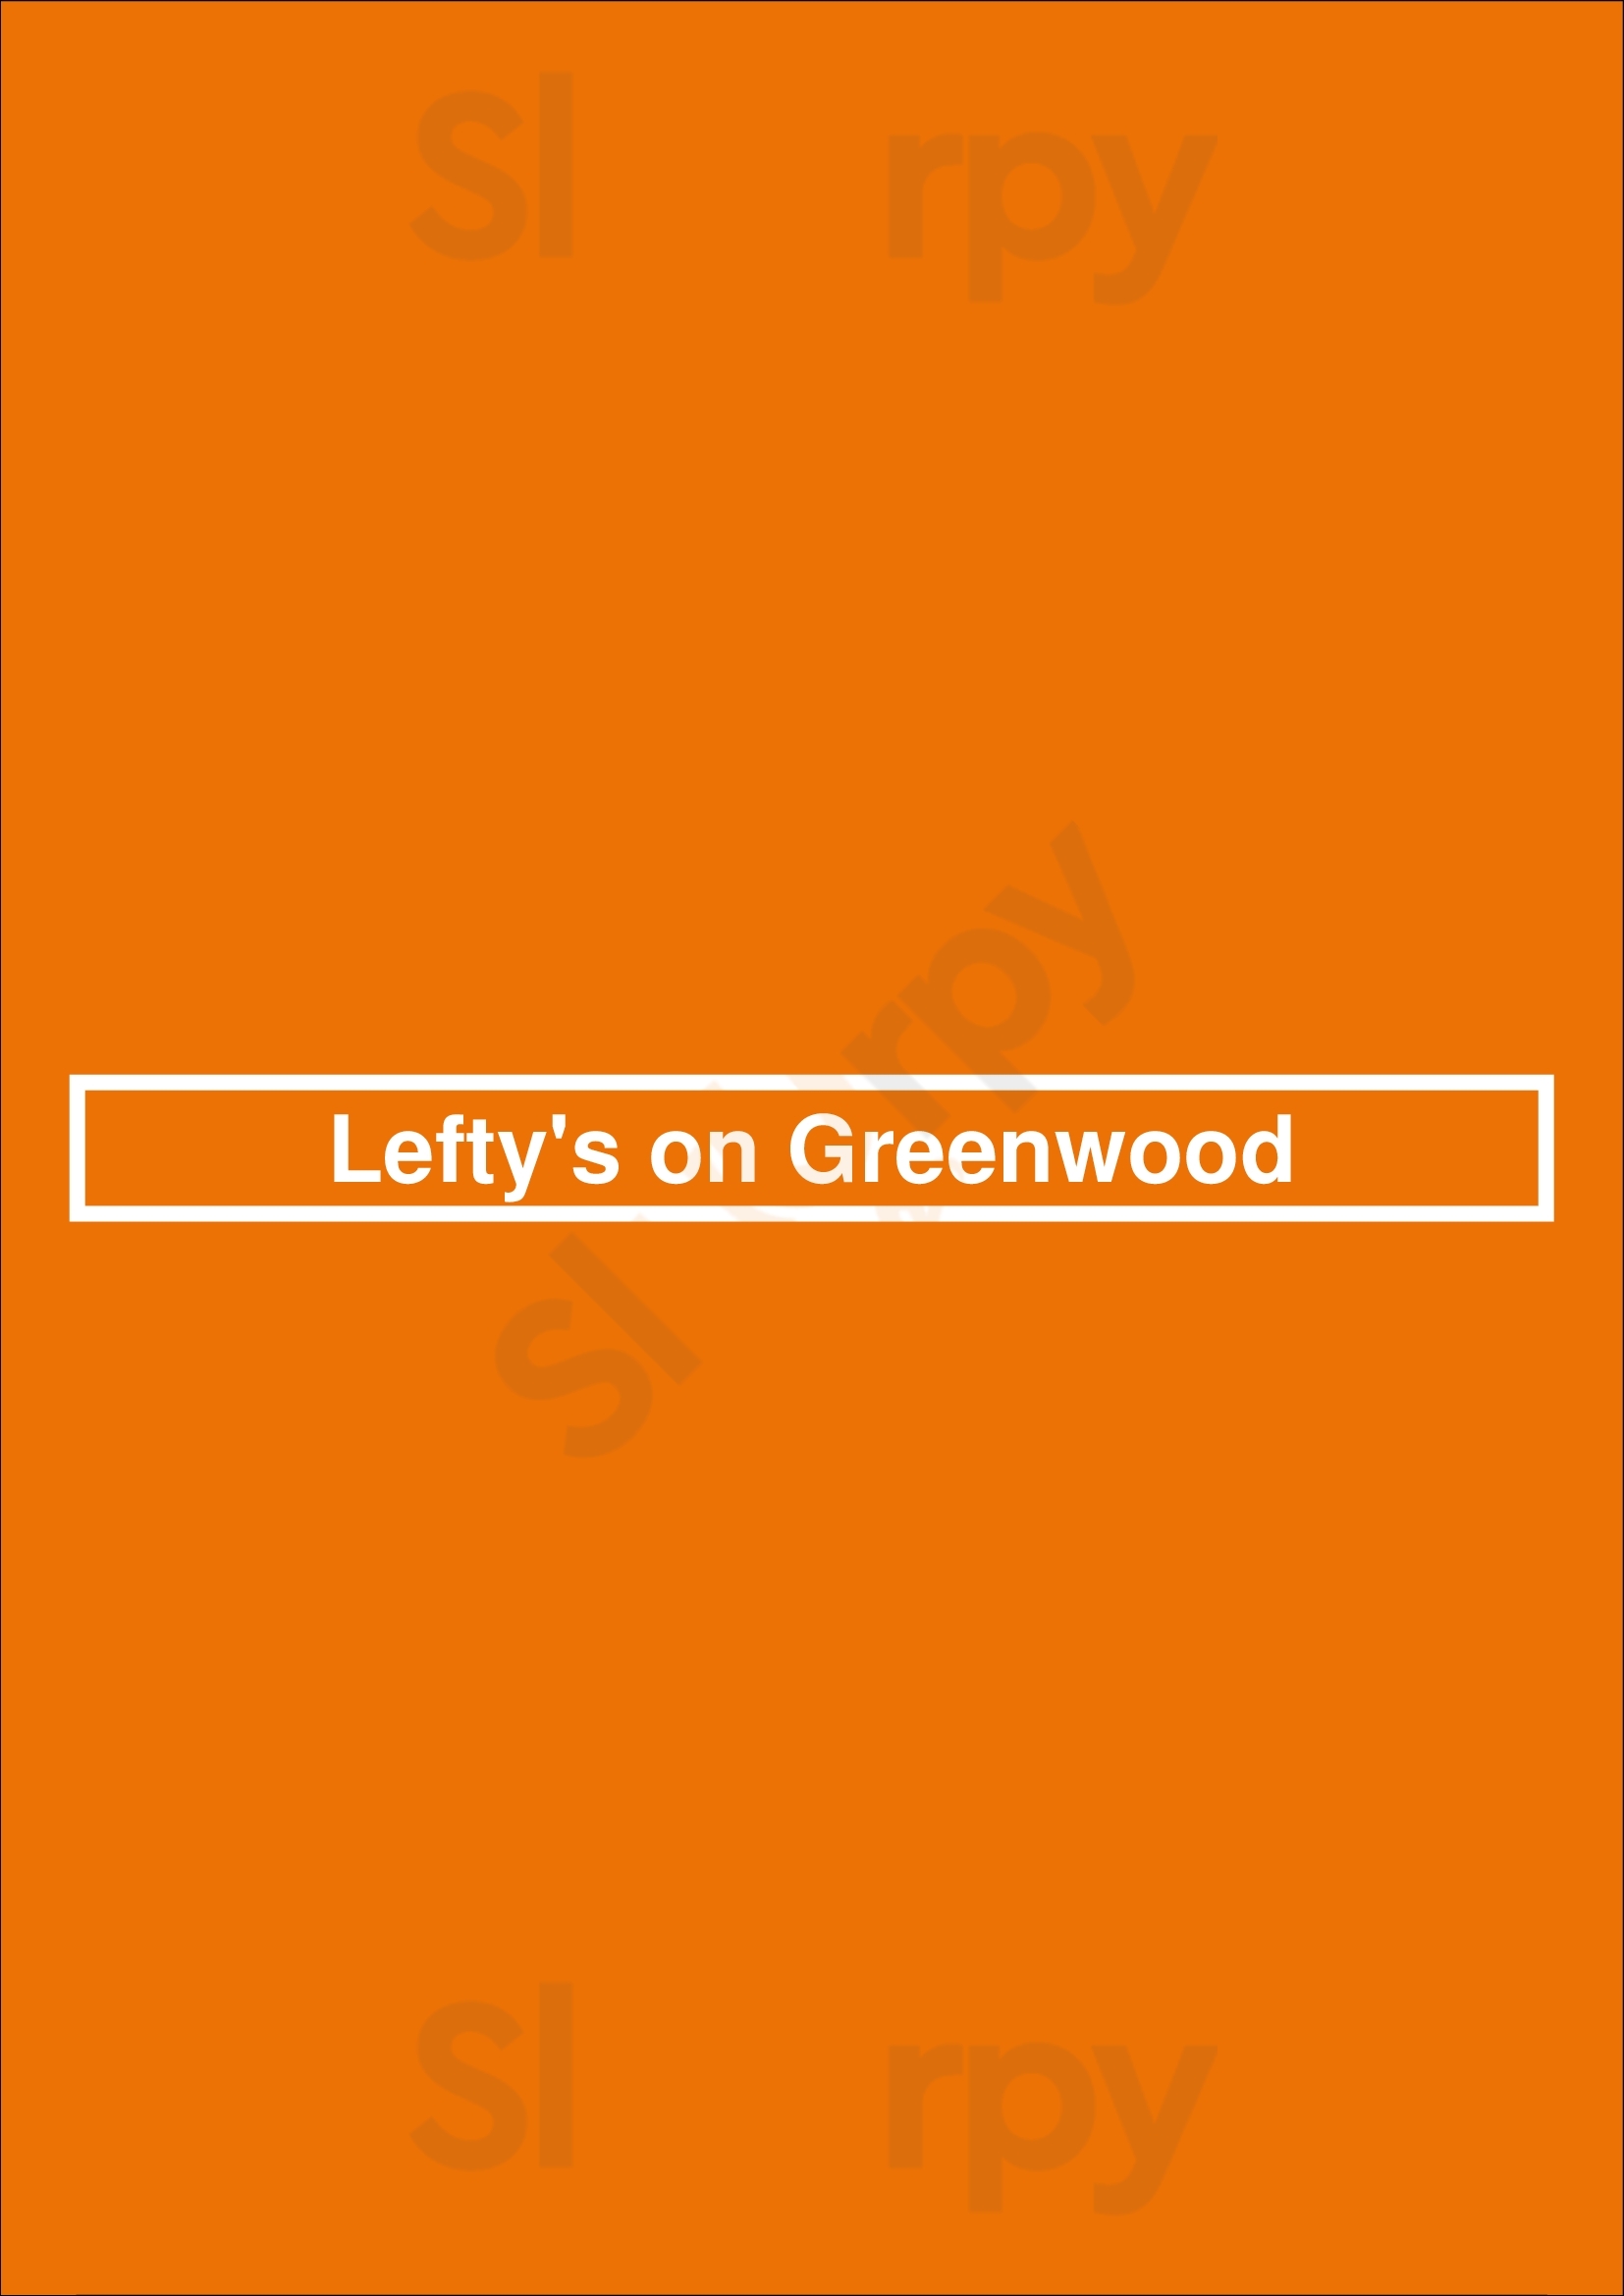 Lefty's On Greenwood Tulsa Menu - 1